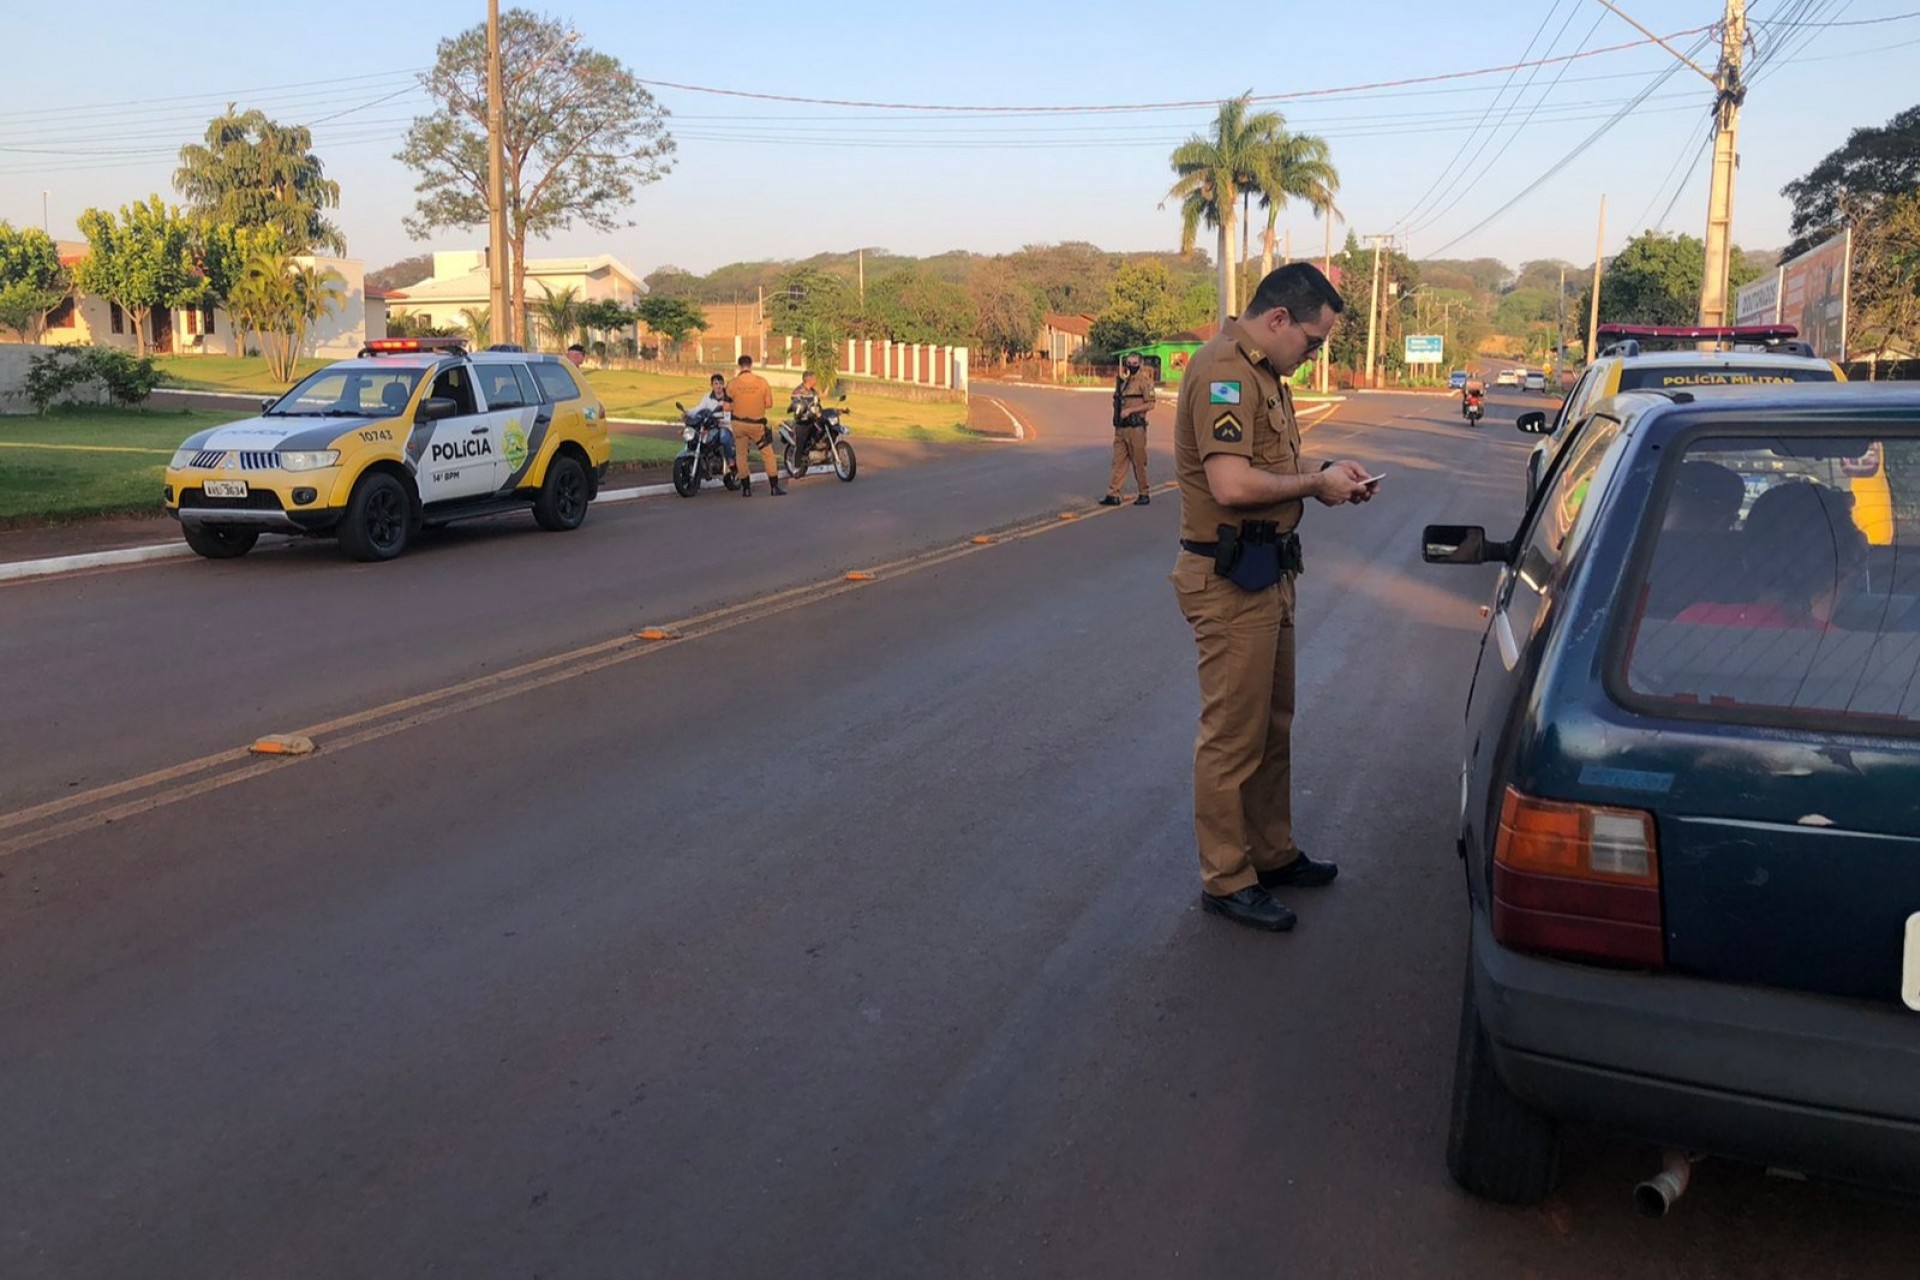 Policia Militar de Itaipulândia desencadeia Operação Vida